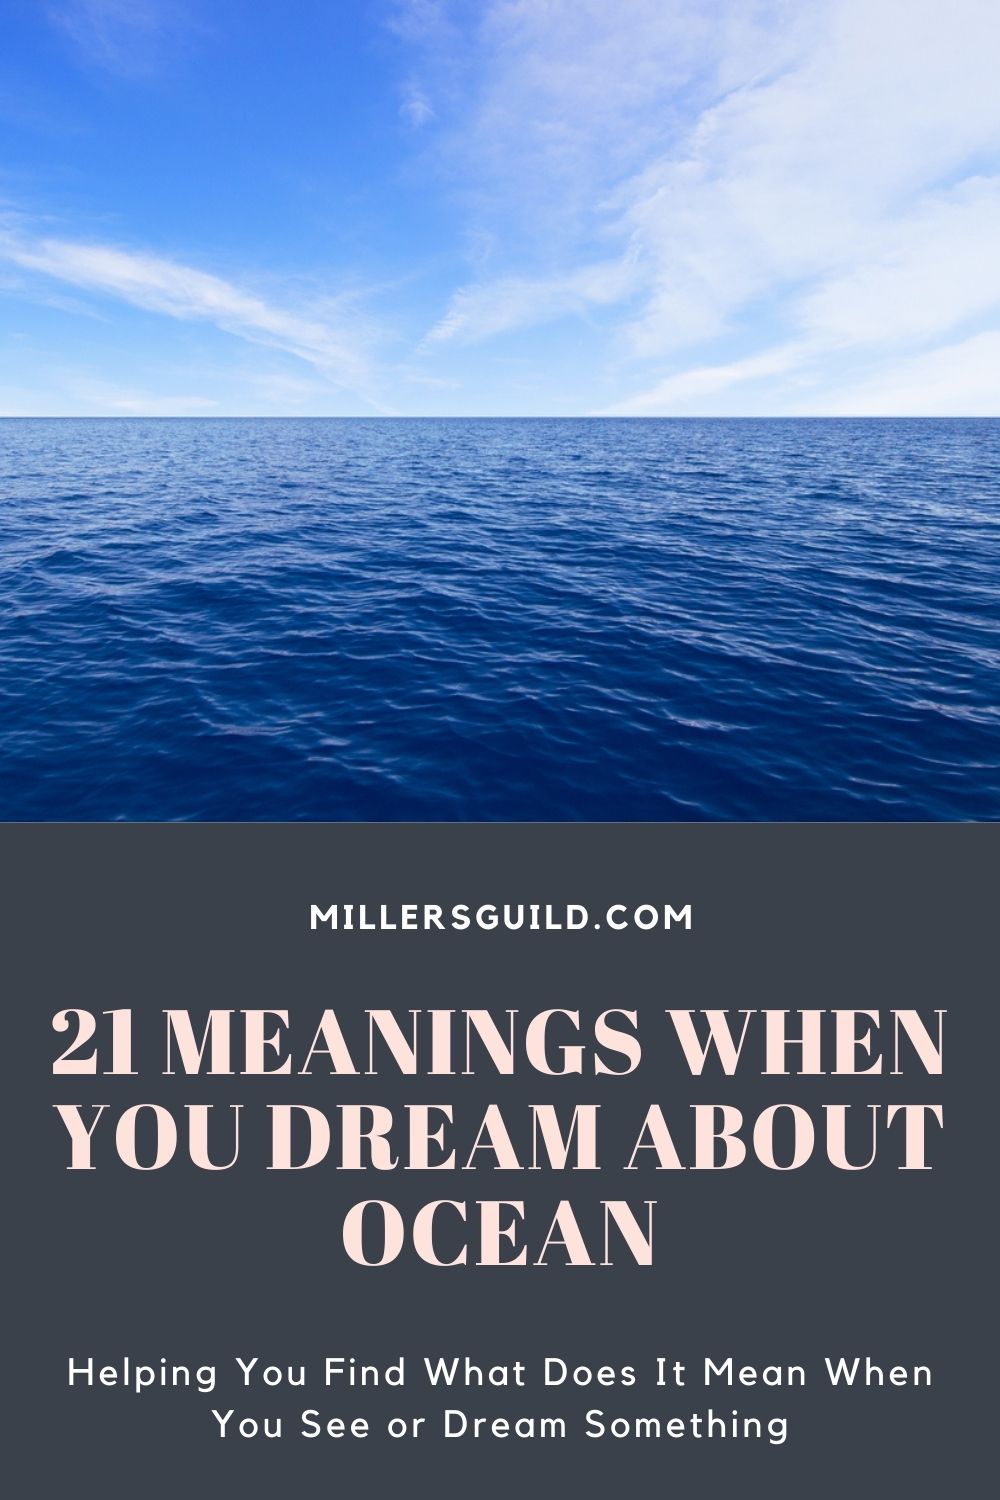 4. Dreaming Of An Ocean